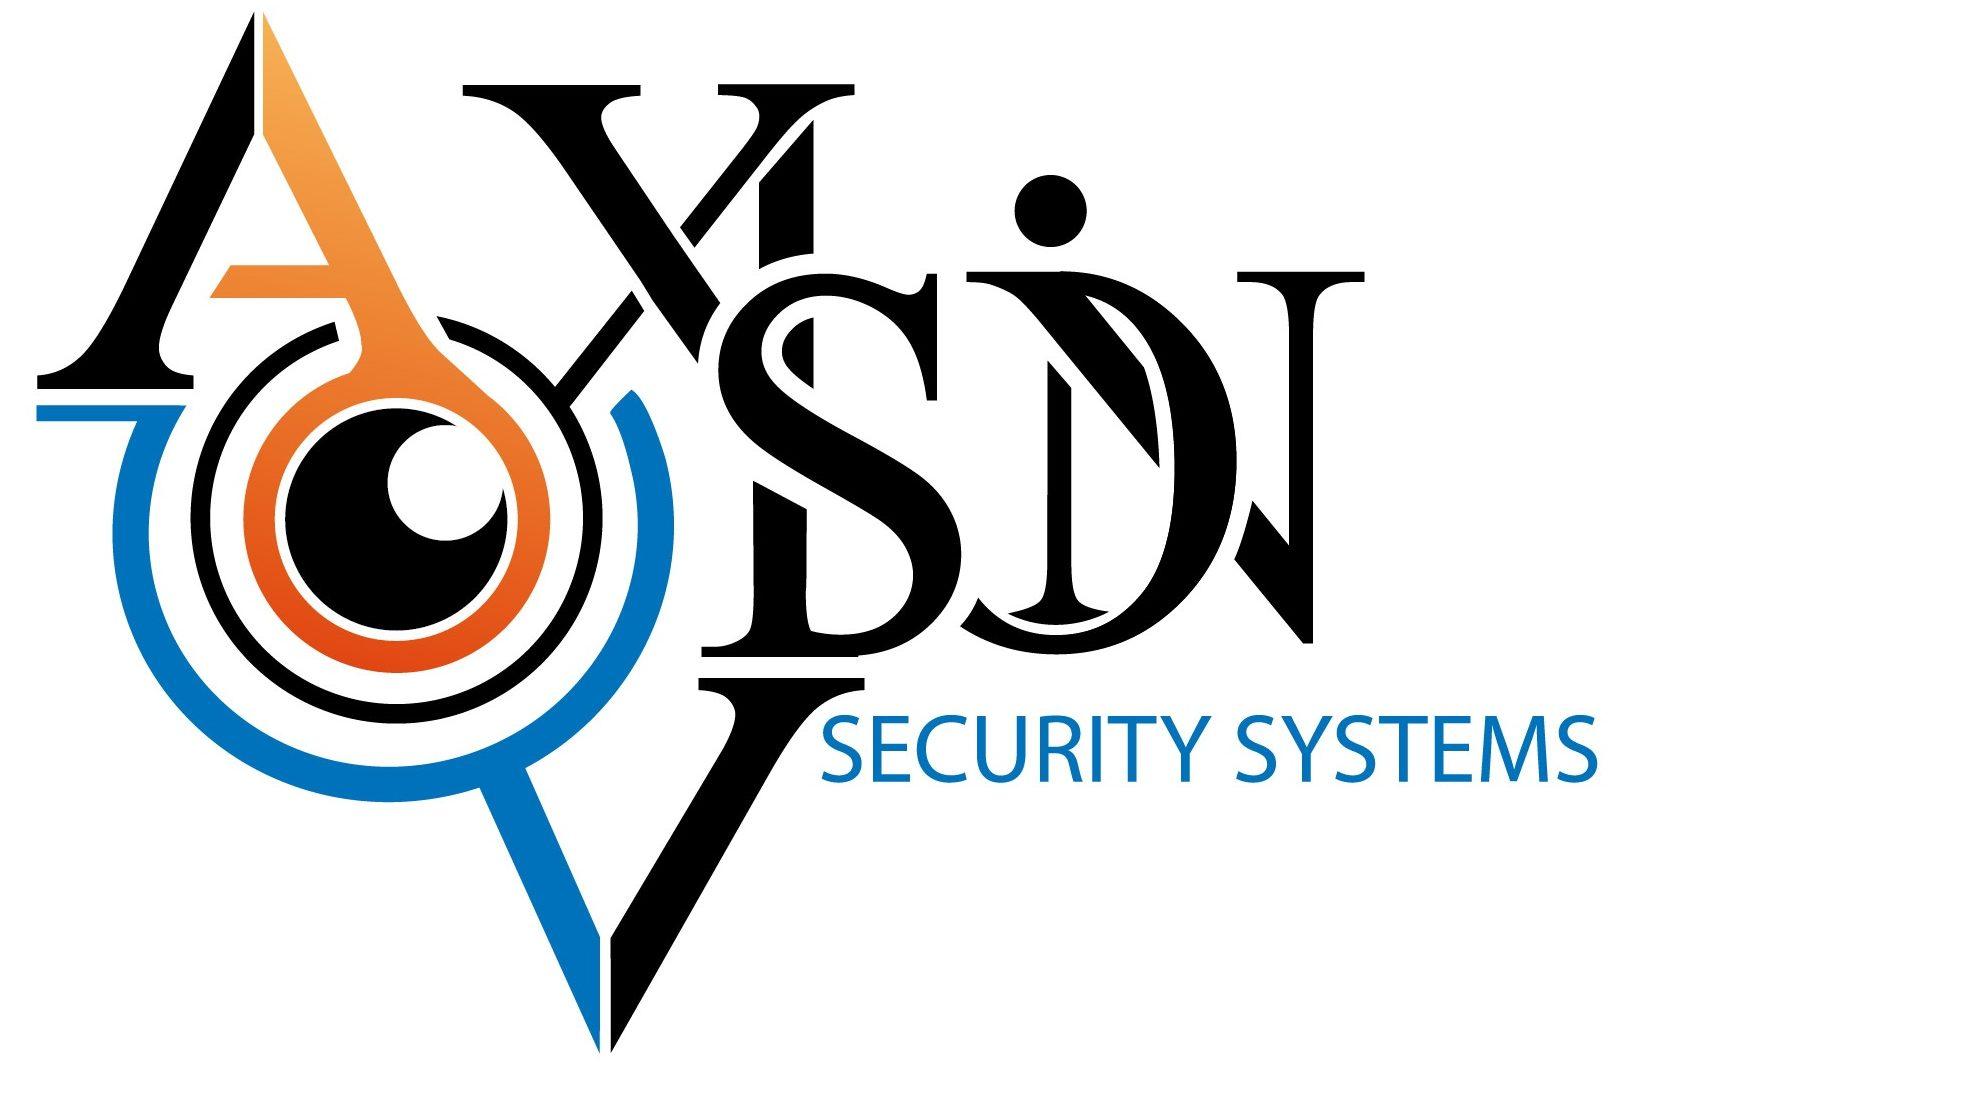 Axivision видеонаблюдение и системы безопасности